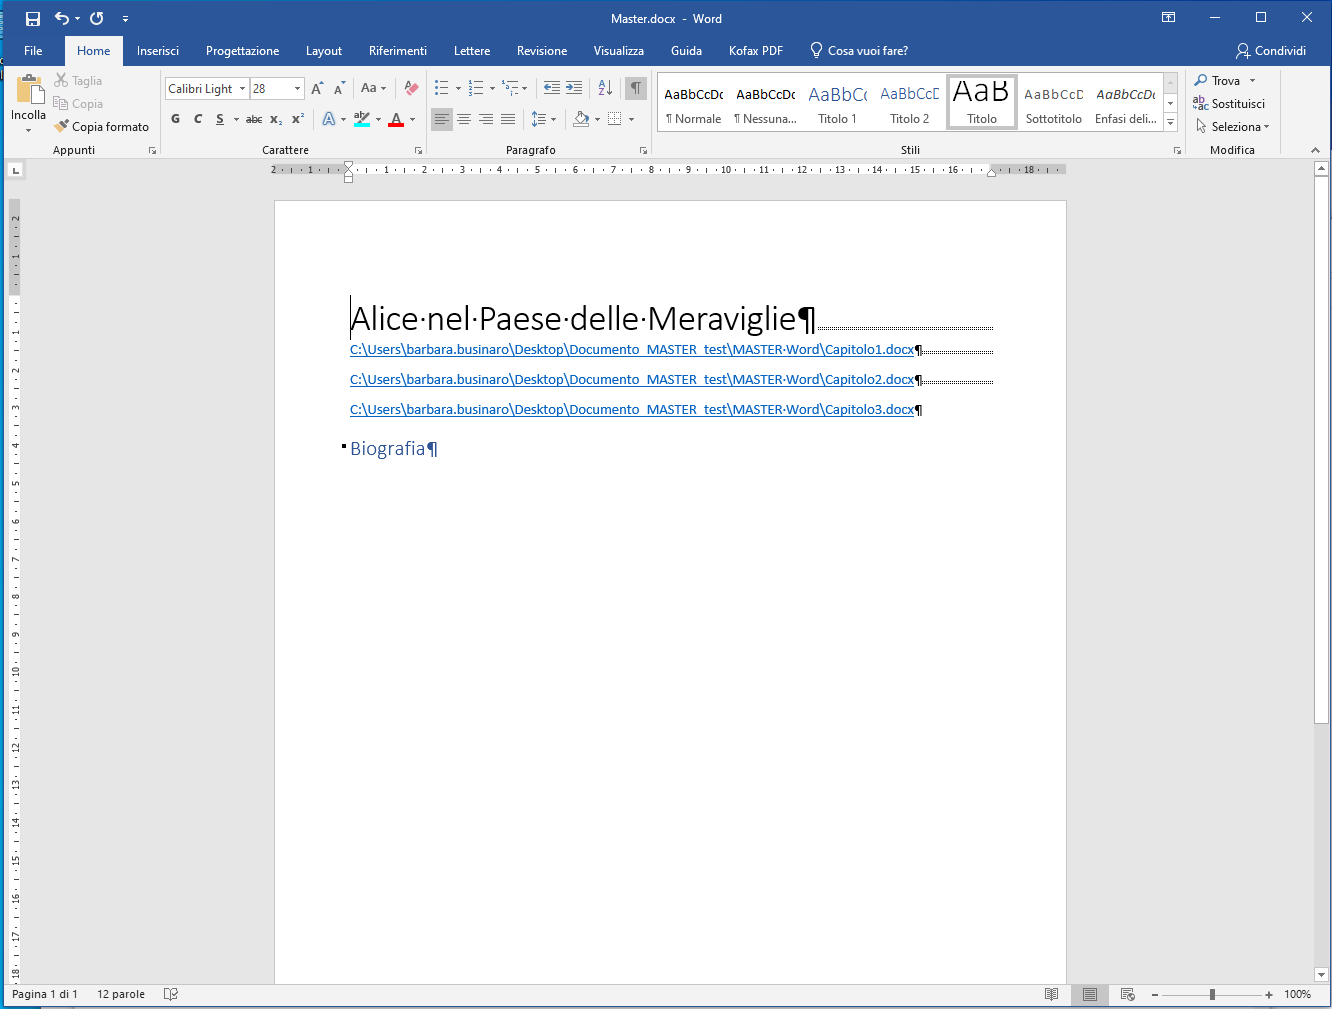 Documento Master in Microsoft Word - Visualizzazione compatta